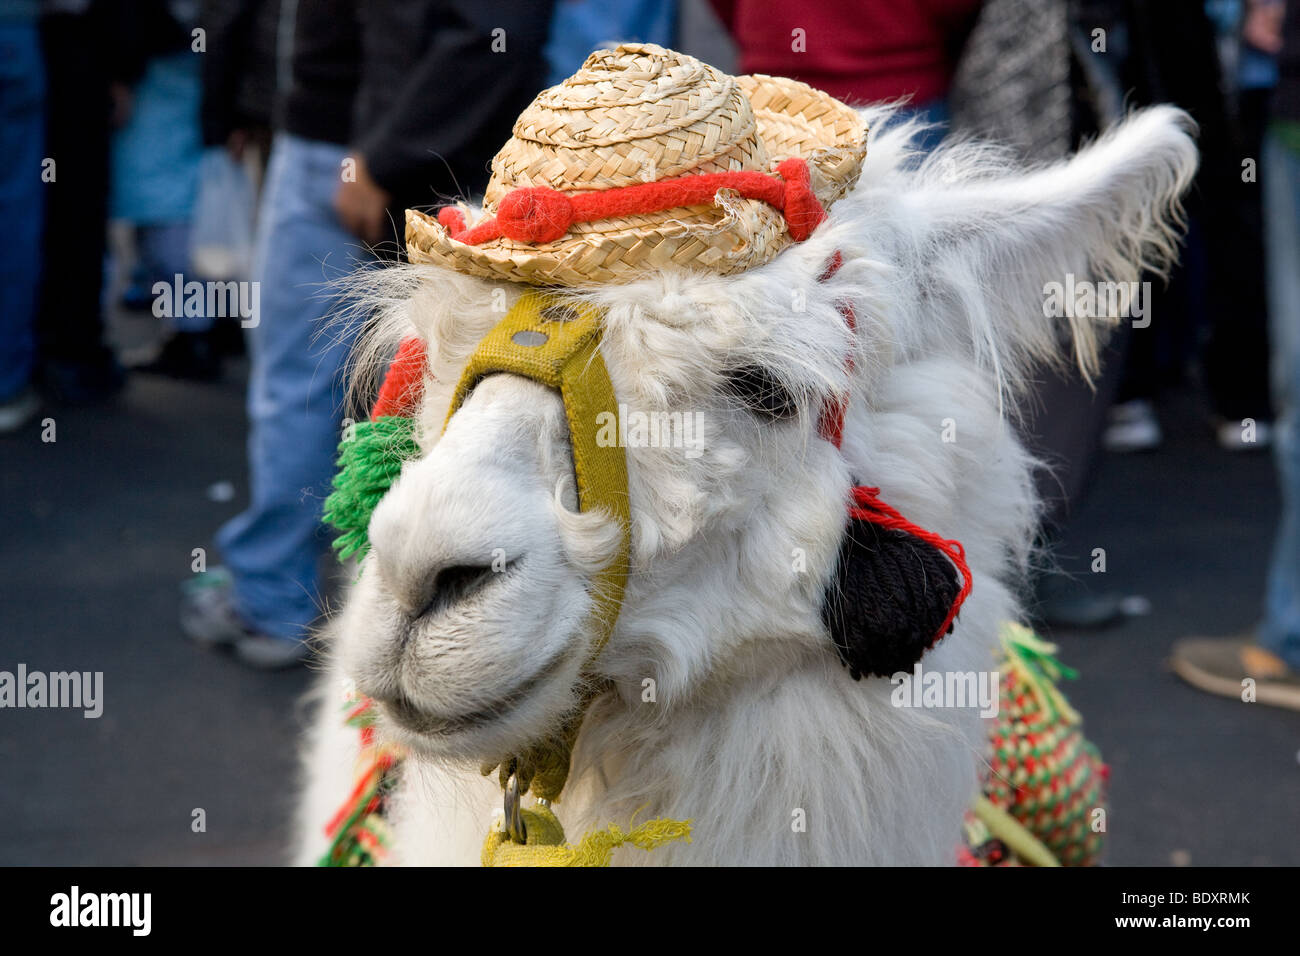 Alpaca dressed in traditional costume at the Feria de Mataderos, Buenos Aires, Argentina Stock Photo